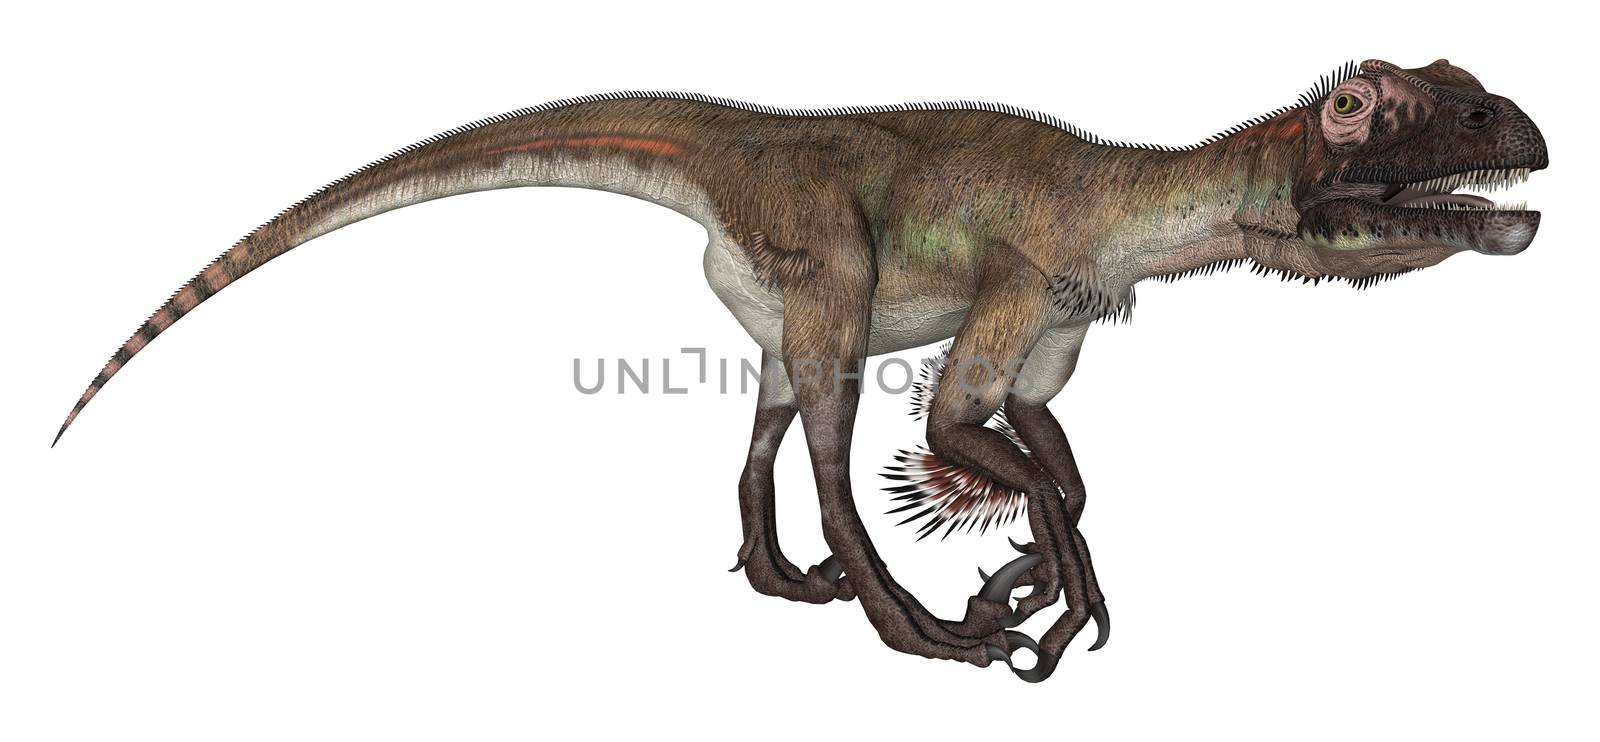 Dinosaur Utahraptor by Vac